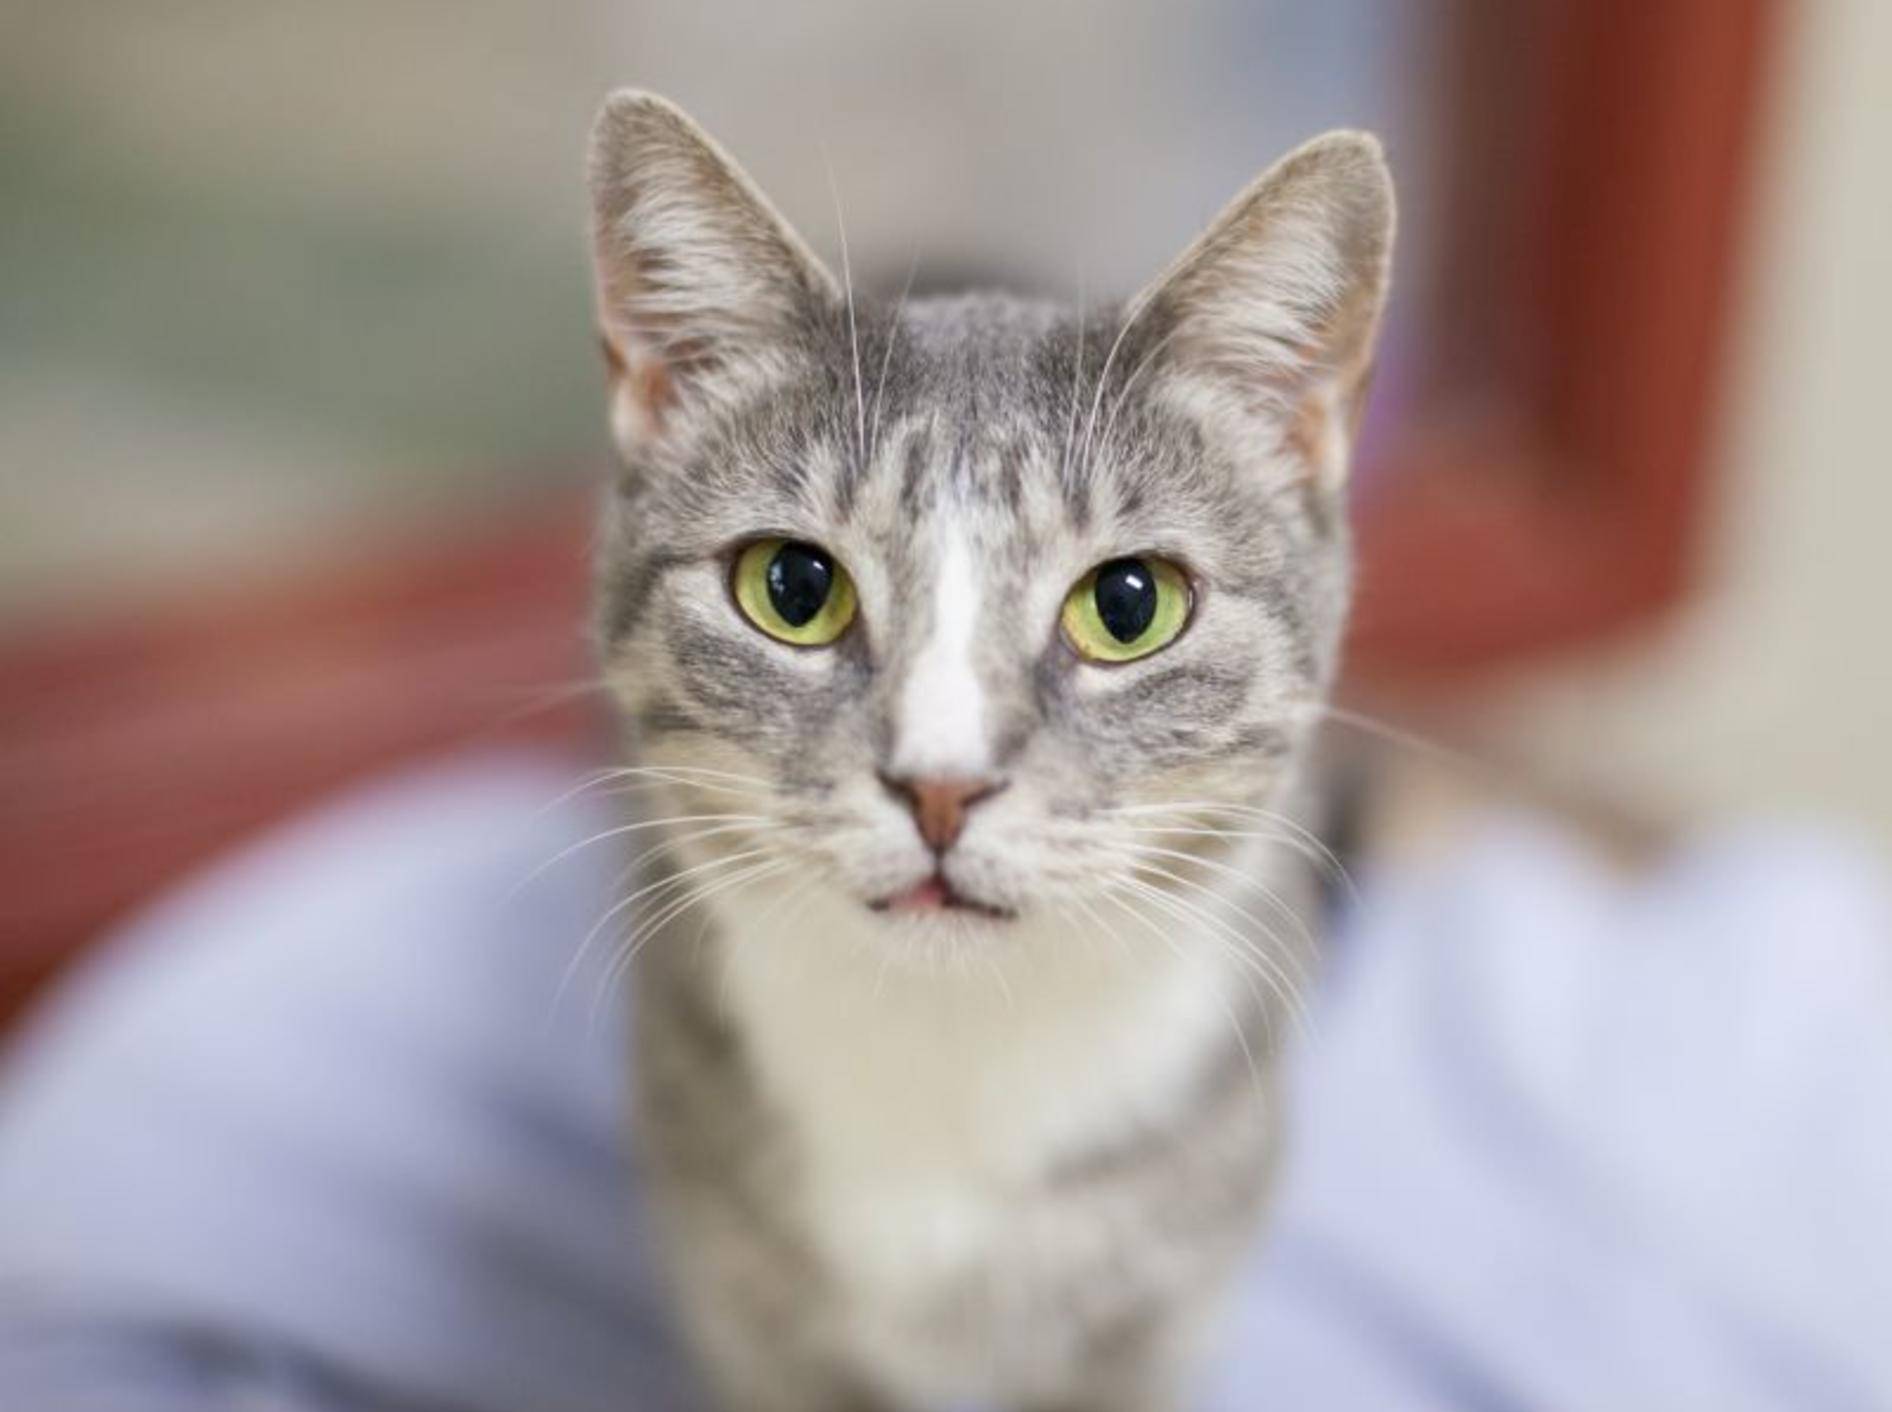 Tierheimkatze zieht ein: Die ersten Tage sind aufregend – Bild: Shutterstock / InBetweentheBlinks